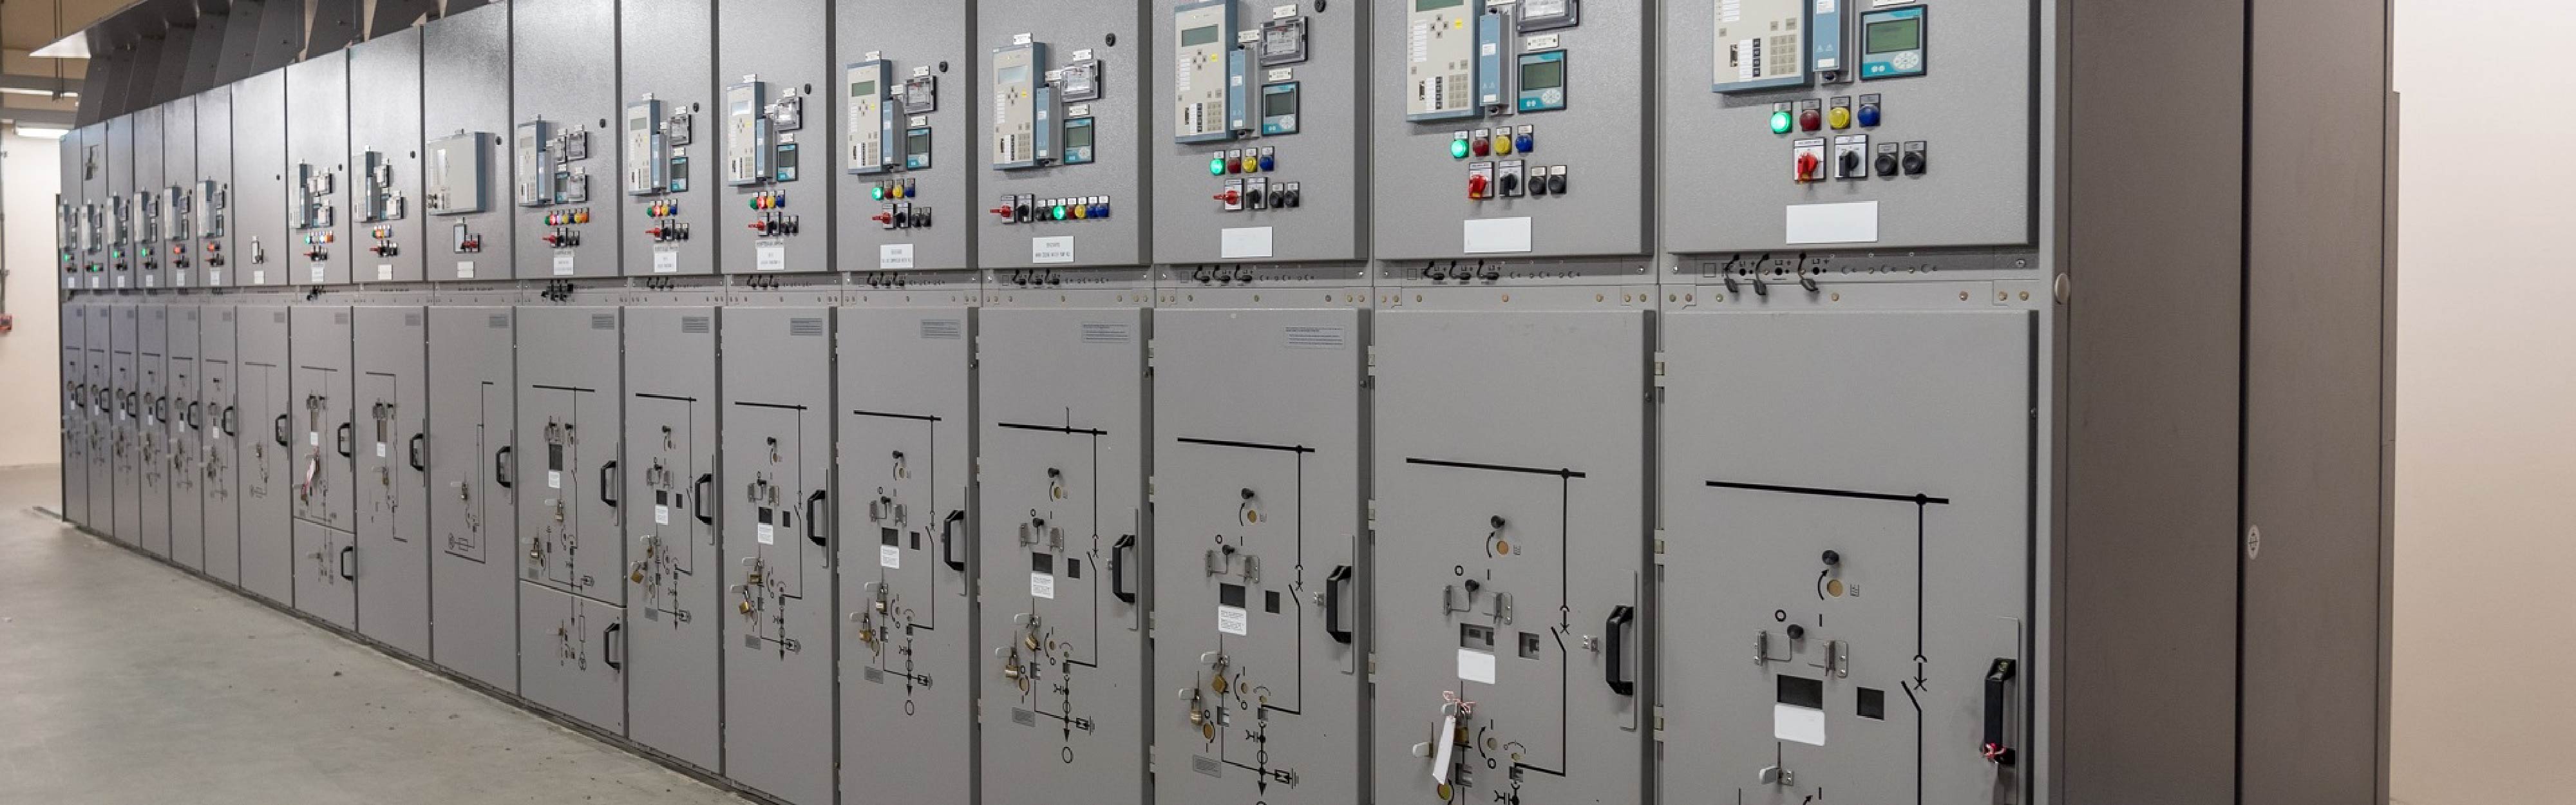 ESEC hoàn thành dự án “Cung cấp hệ thống điện điều khiển và SCADA” cho nhà máy Sika Nhơn Trạch